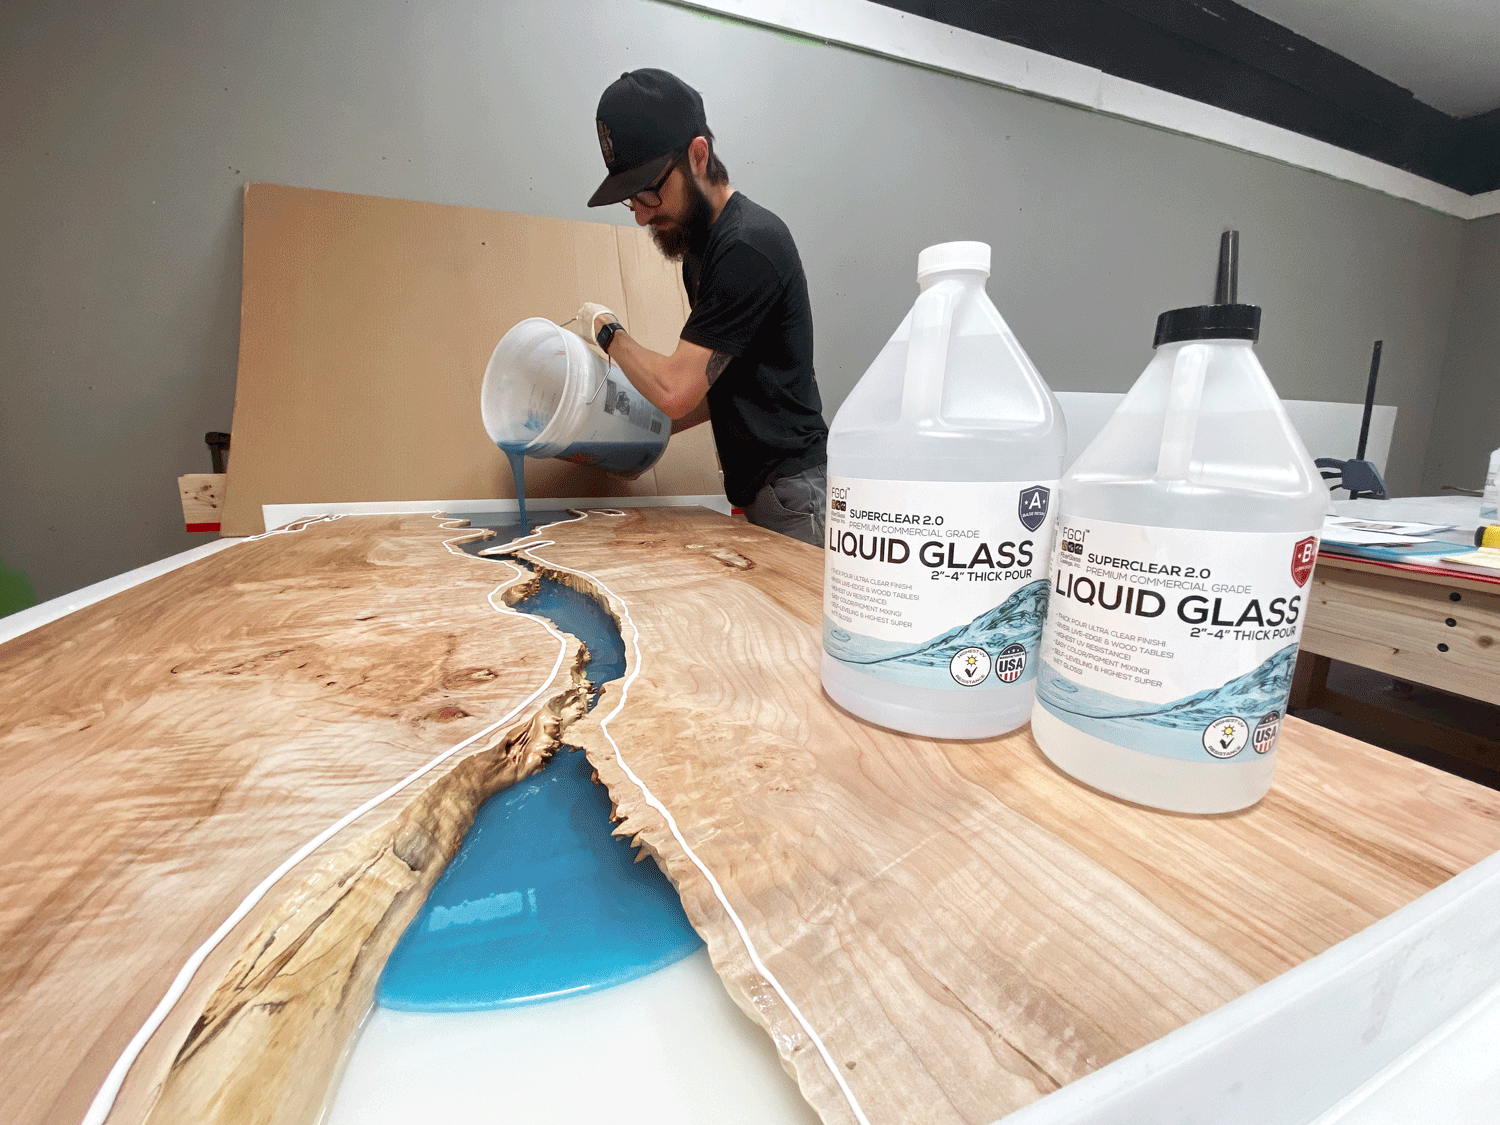 Liquid Glass Deep Pour 24 Hour Epoxy Kit — Wane+Flitch